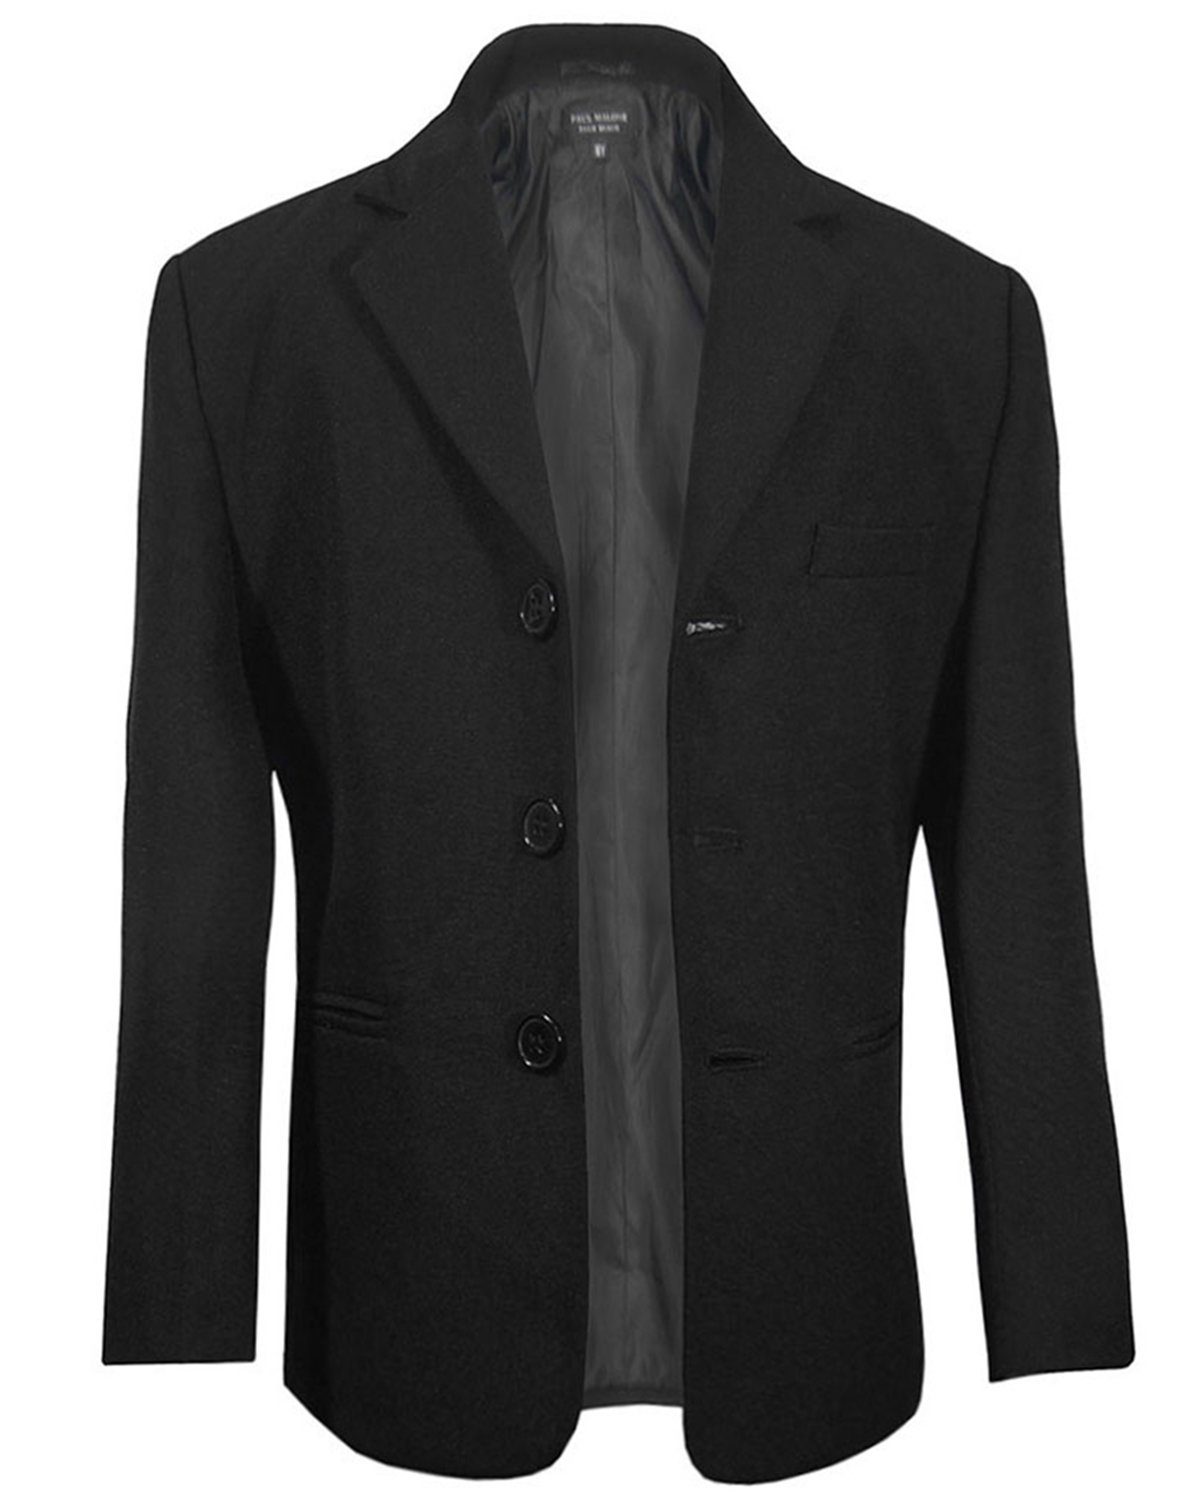 Paul Malone Sakko »Elegantes Kindersakko Anzugjacke Jackett für Jungen«  schwarz KA20, Gr. 86 online kaufen | OTTO